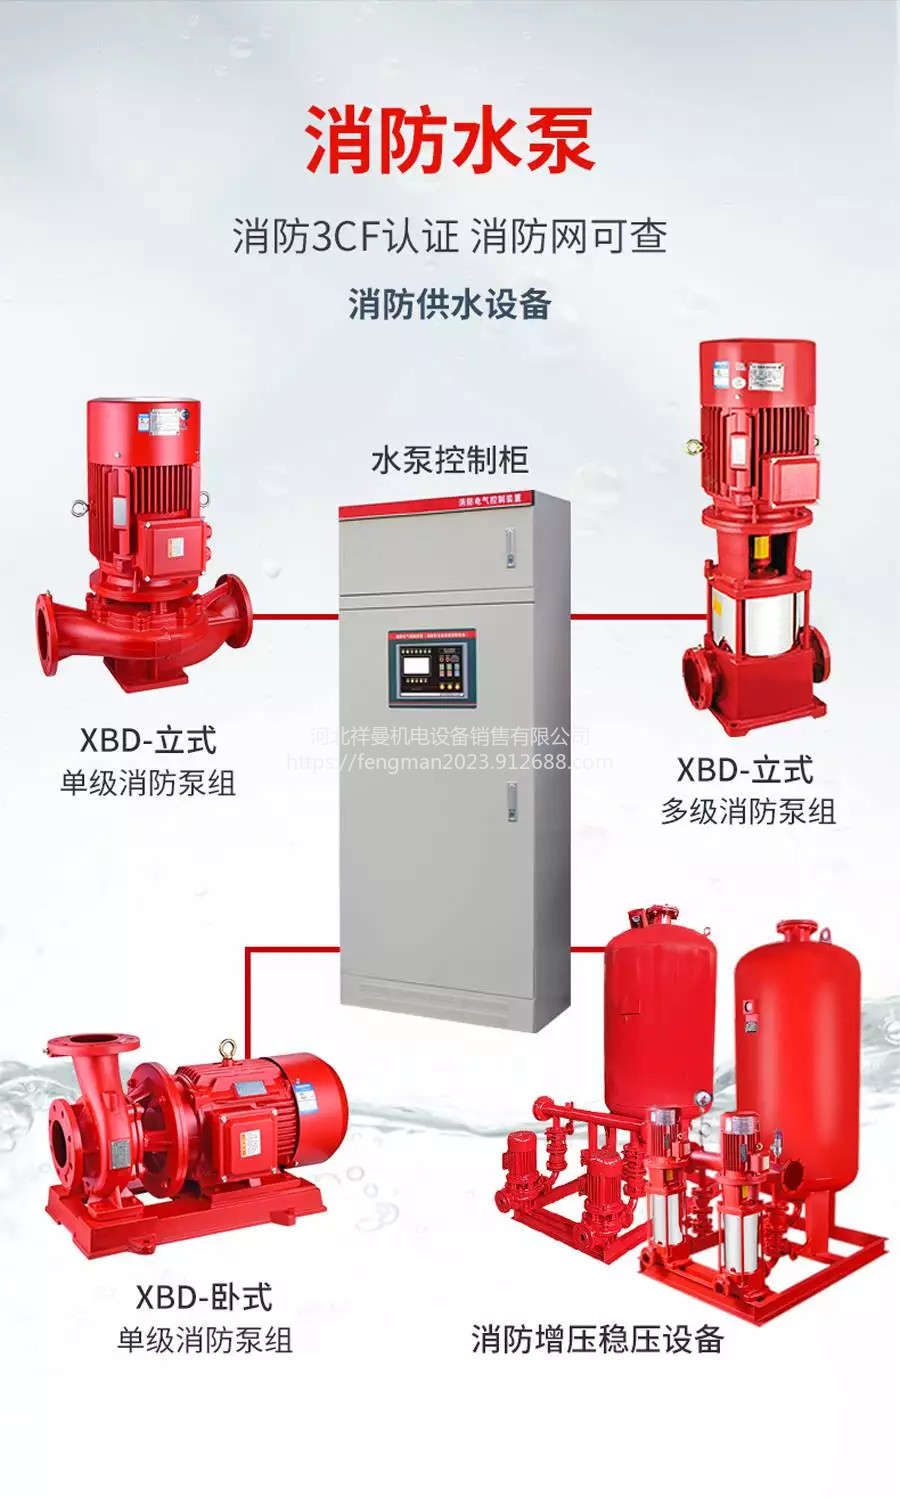 北京昌平立式单极消防泵、XBD厂家